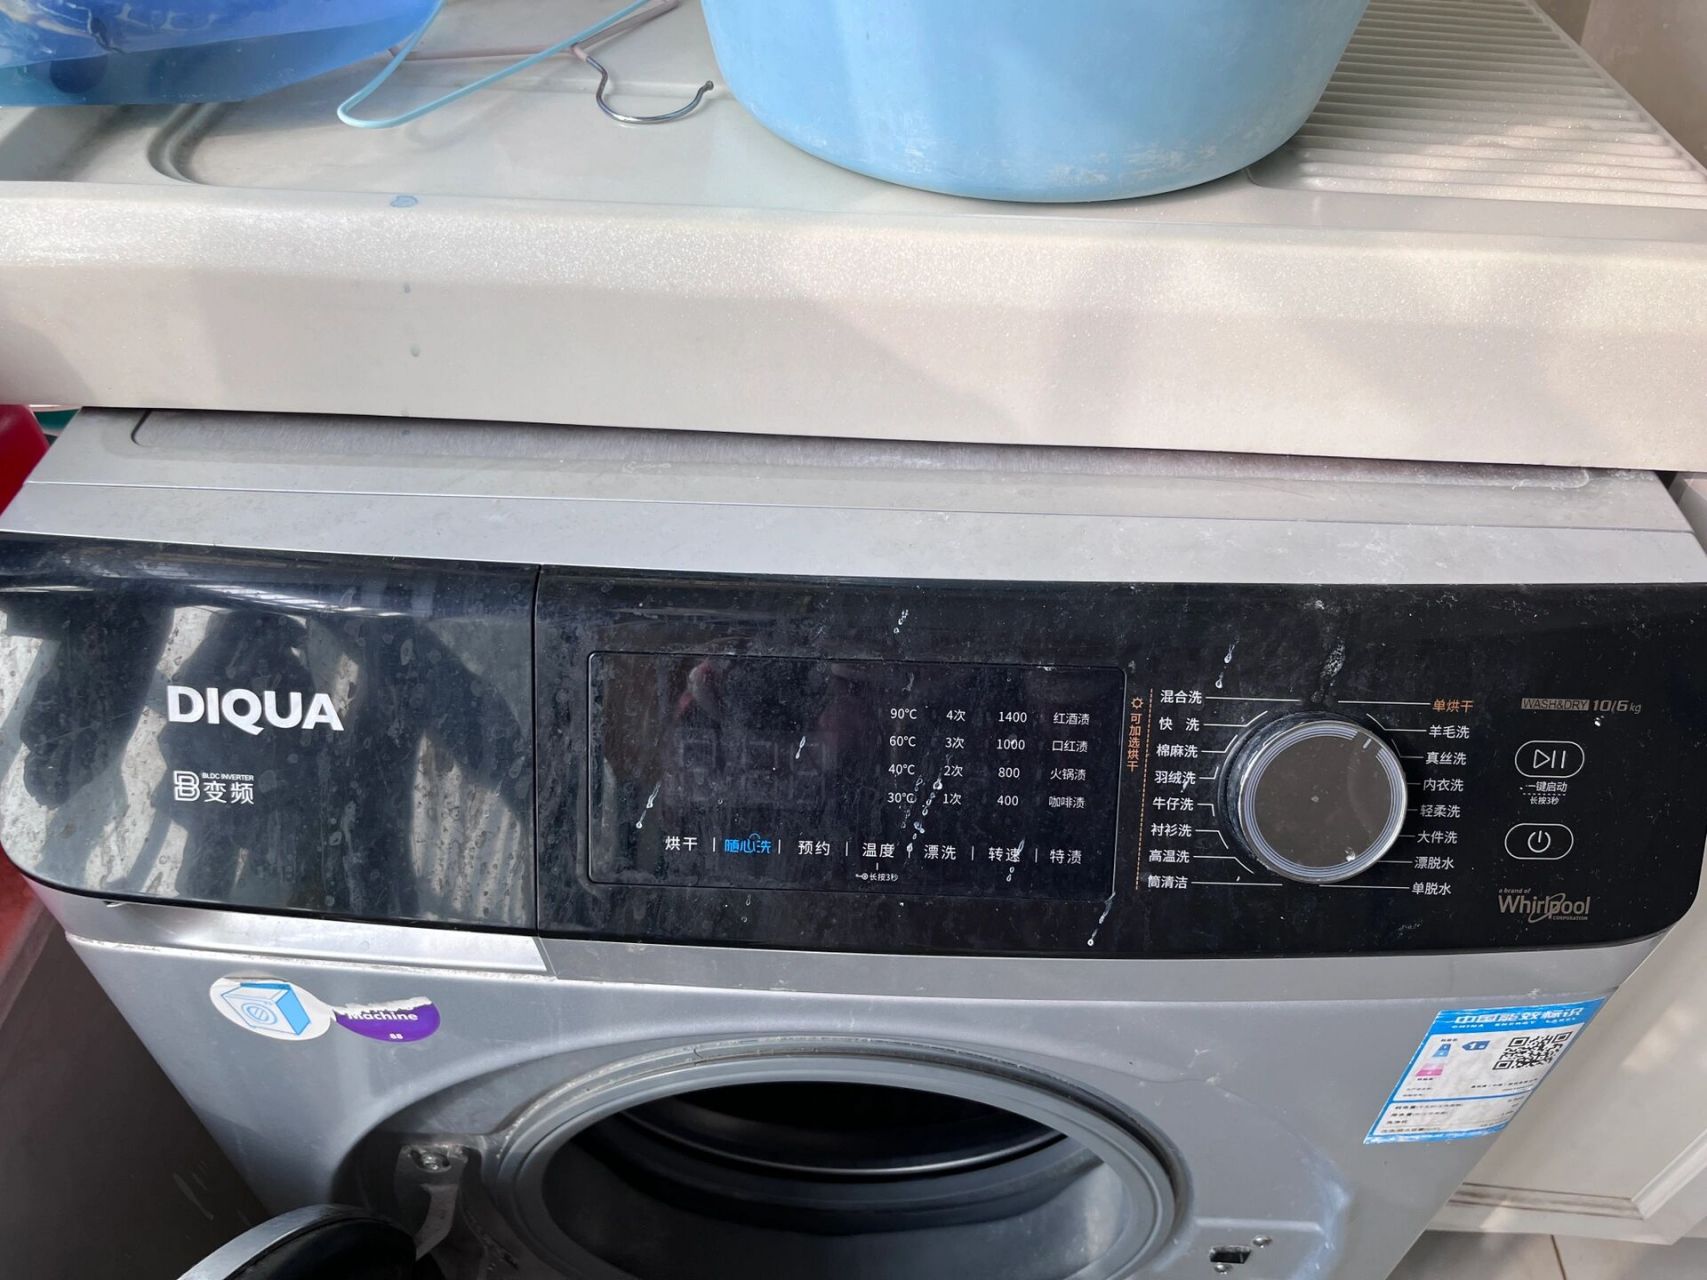 三洋diqua洗衣机说明书图片